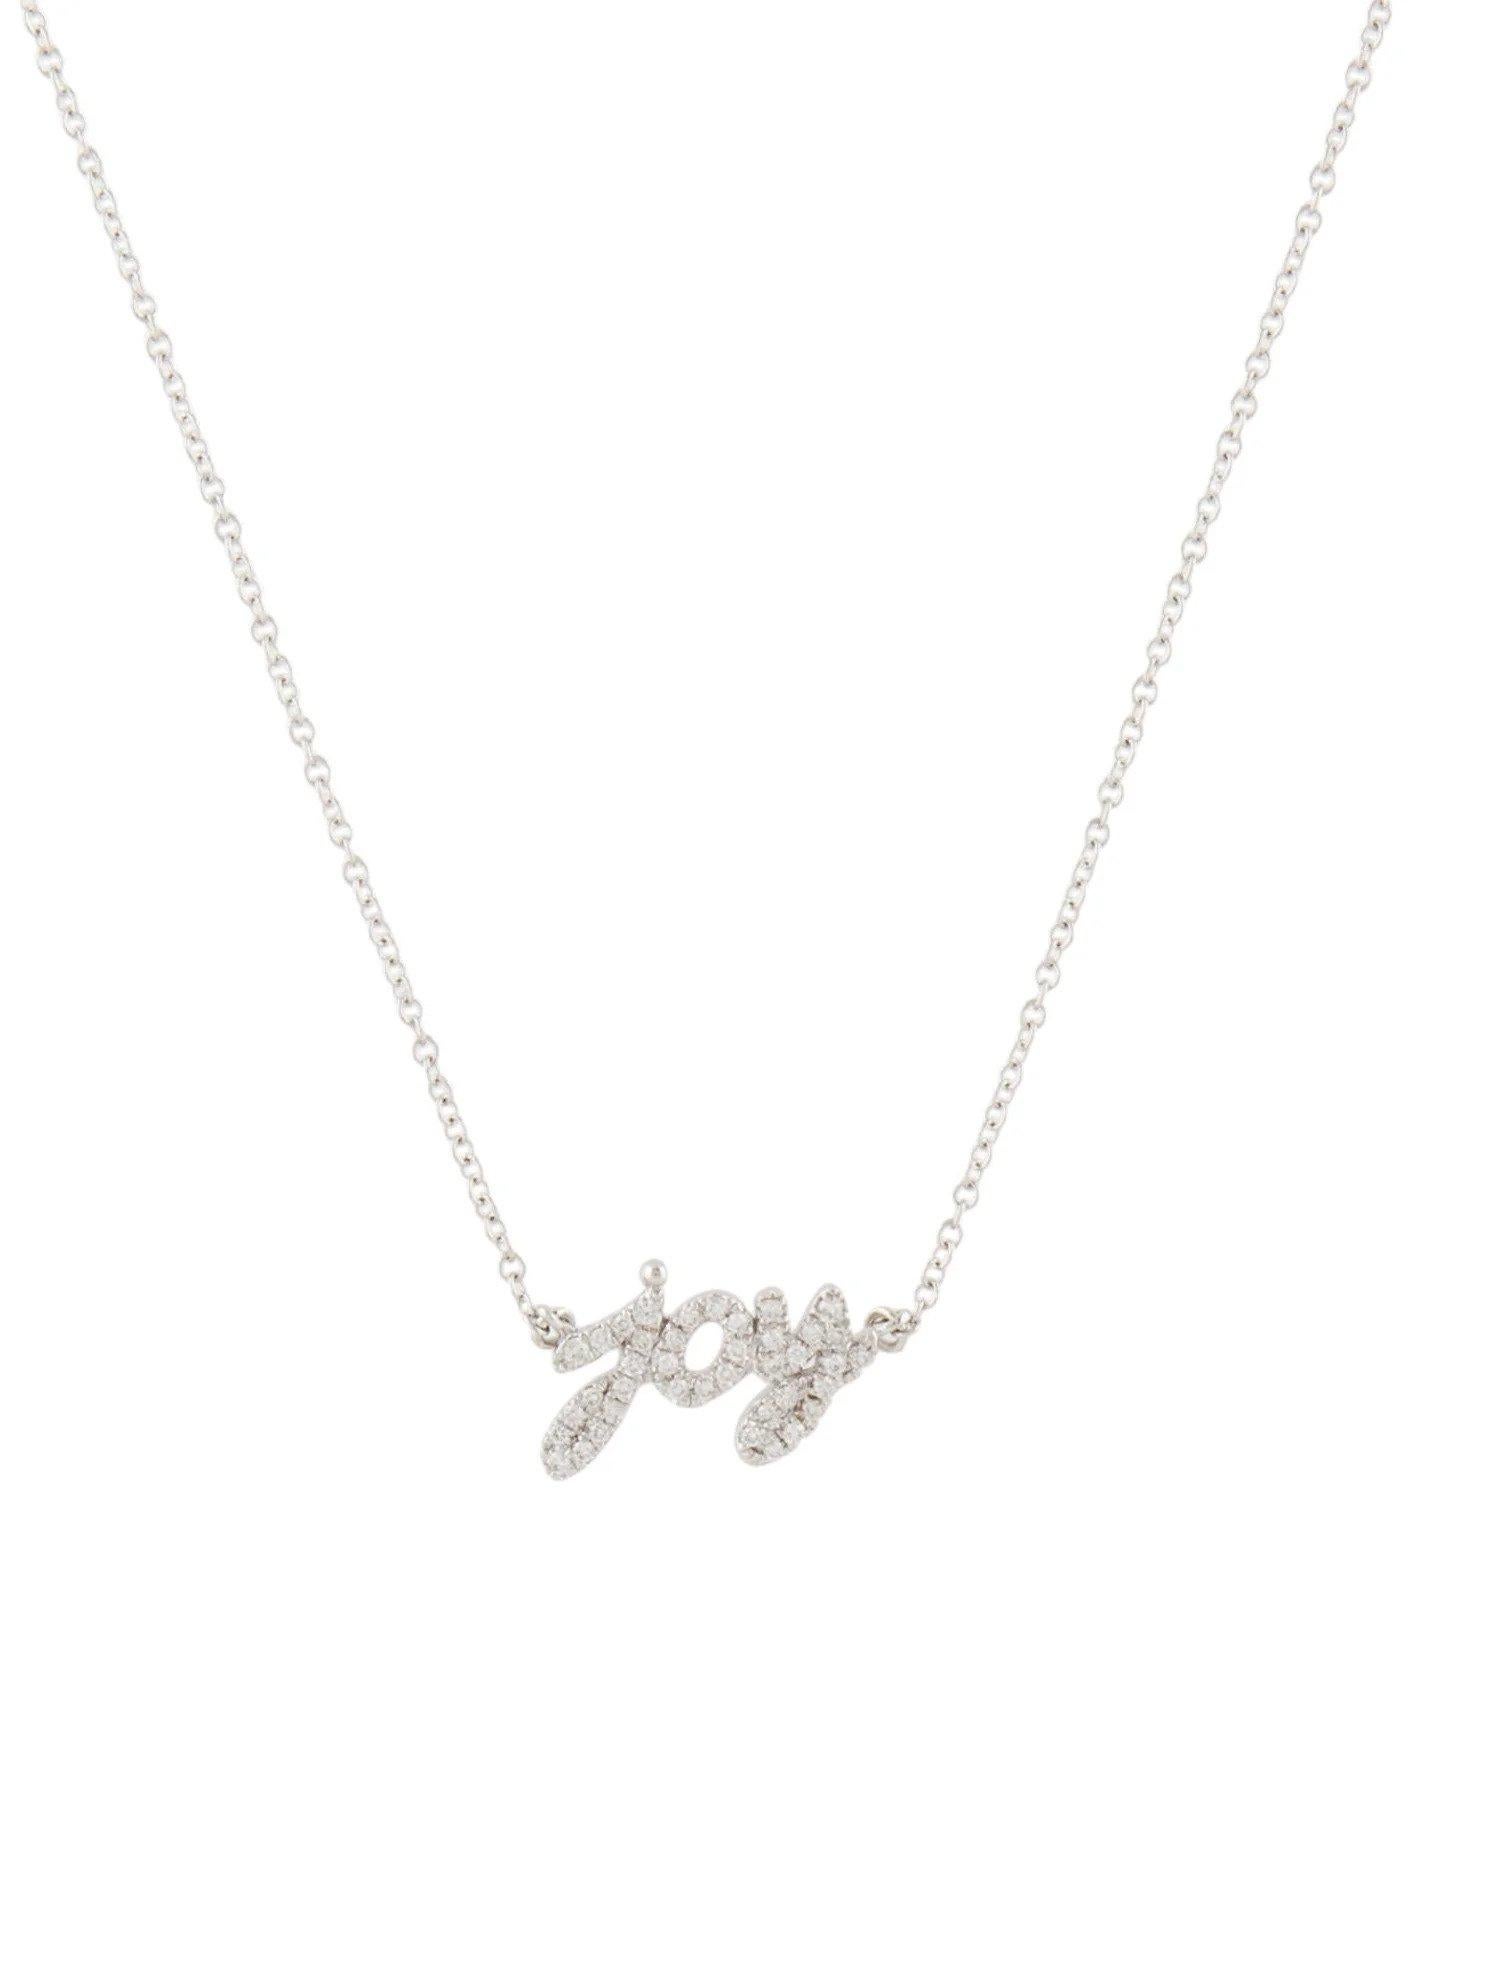 Round Cut 0.12 Carat Diamond Joy White Gold Pendant Necklace For Sale